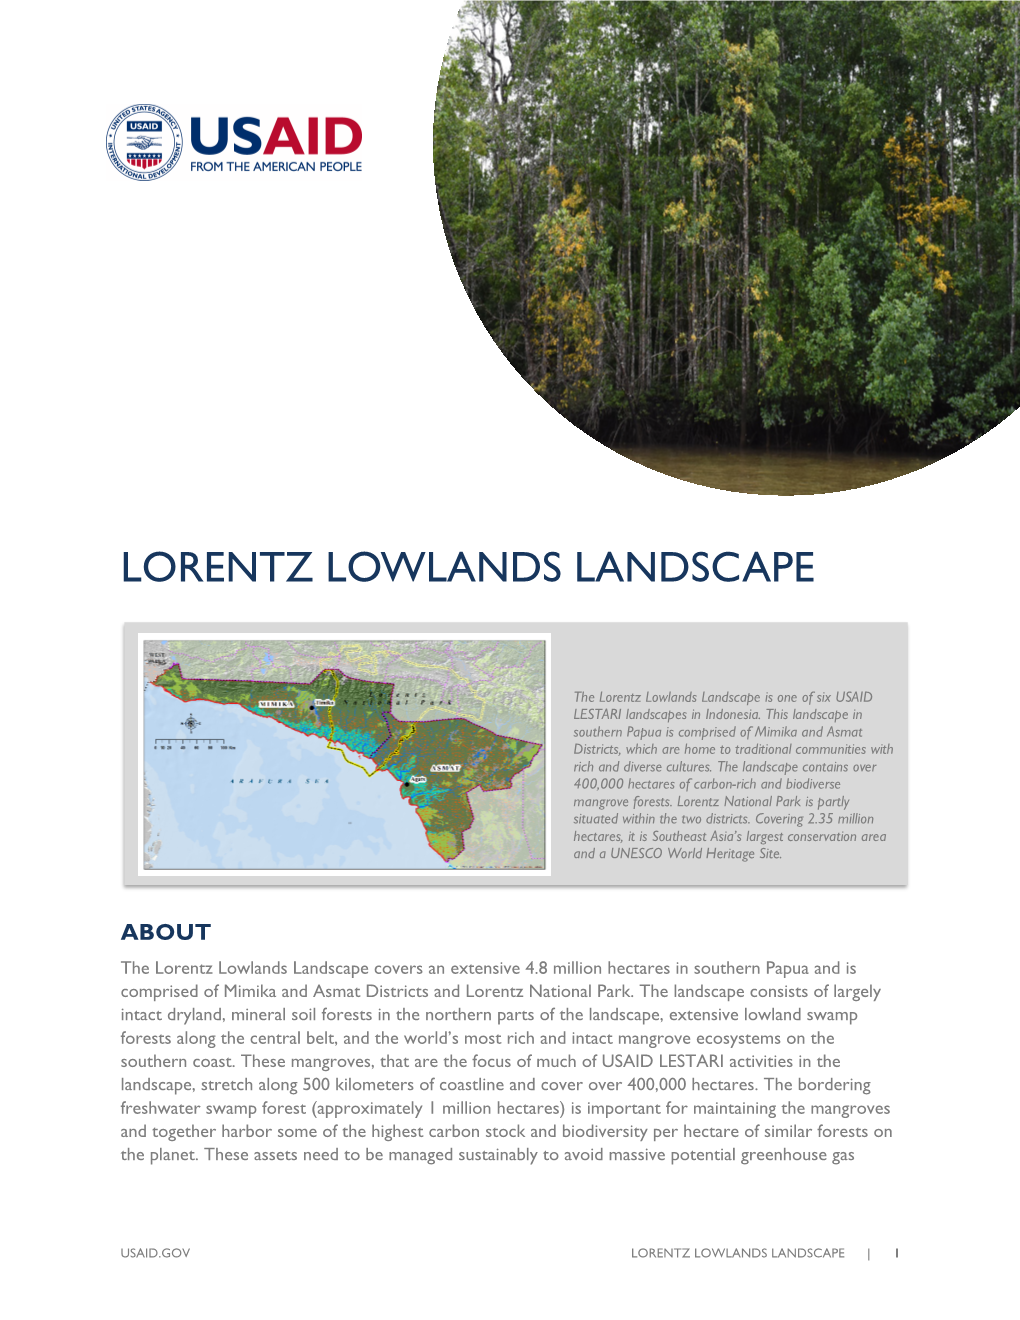 Lorentz Lowlands Landscape